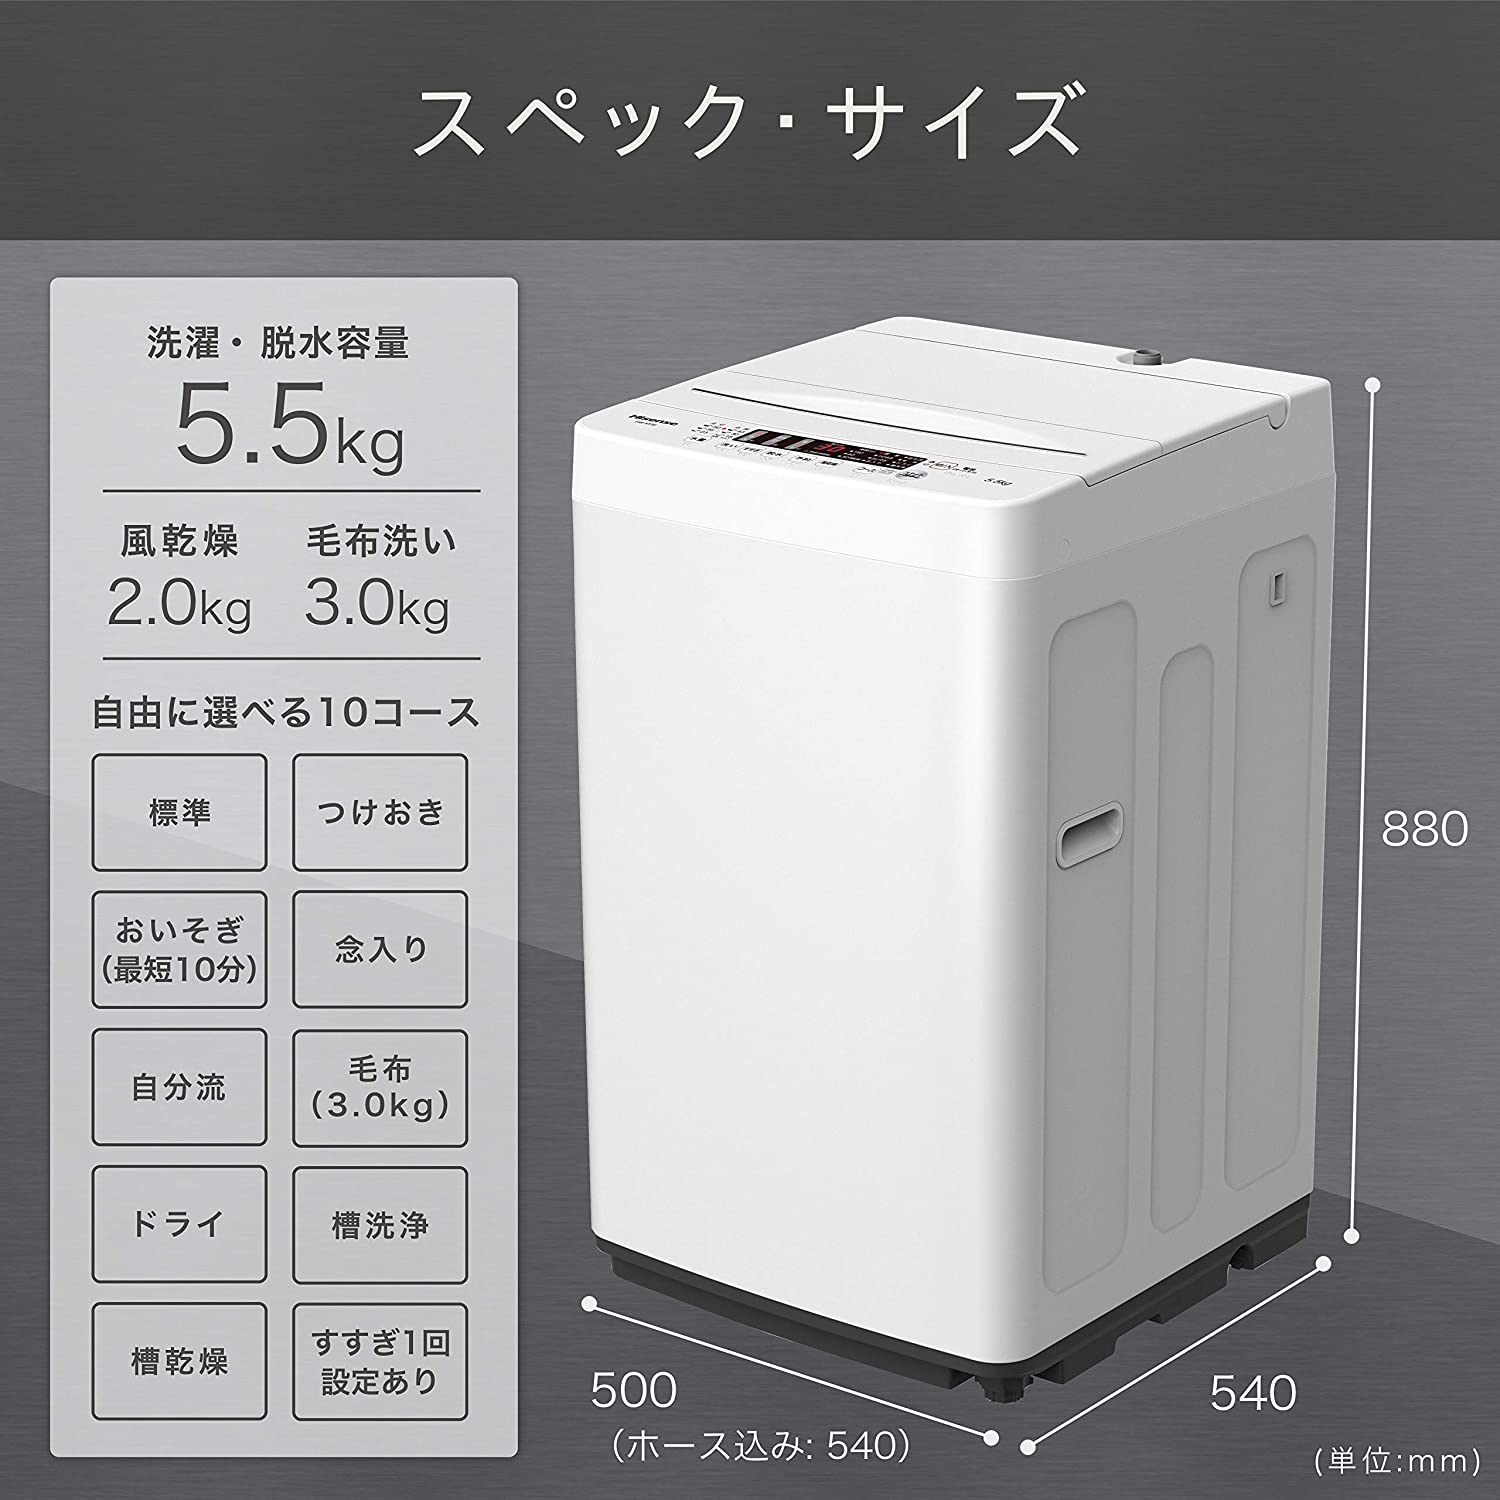 ハイセンス HW-K55E 5.5kg全自動洗濯機 株式会社きとみ電器